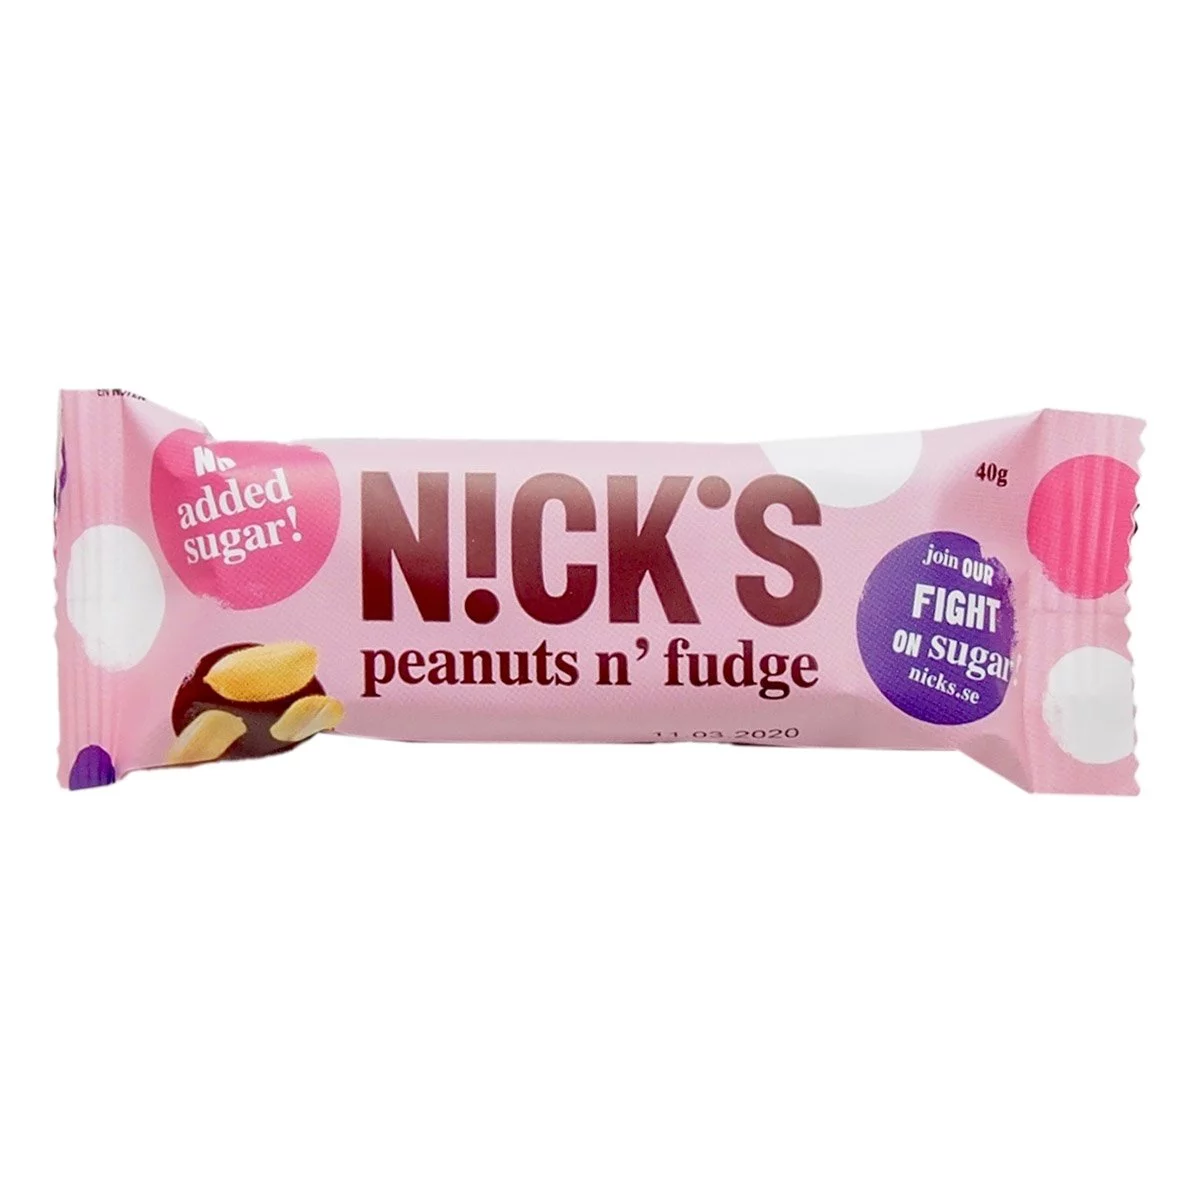 NICK'S peanuts n' fudge (40g) 1